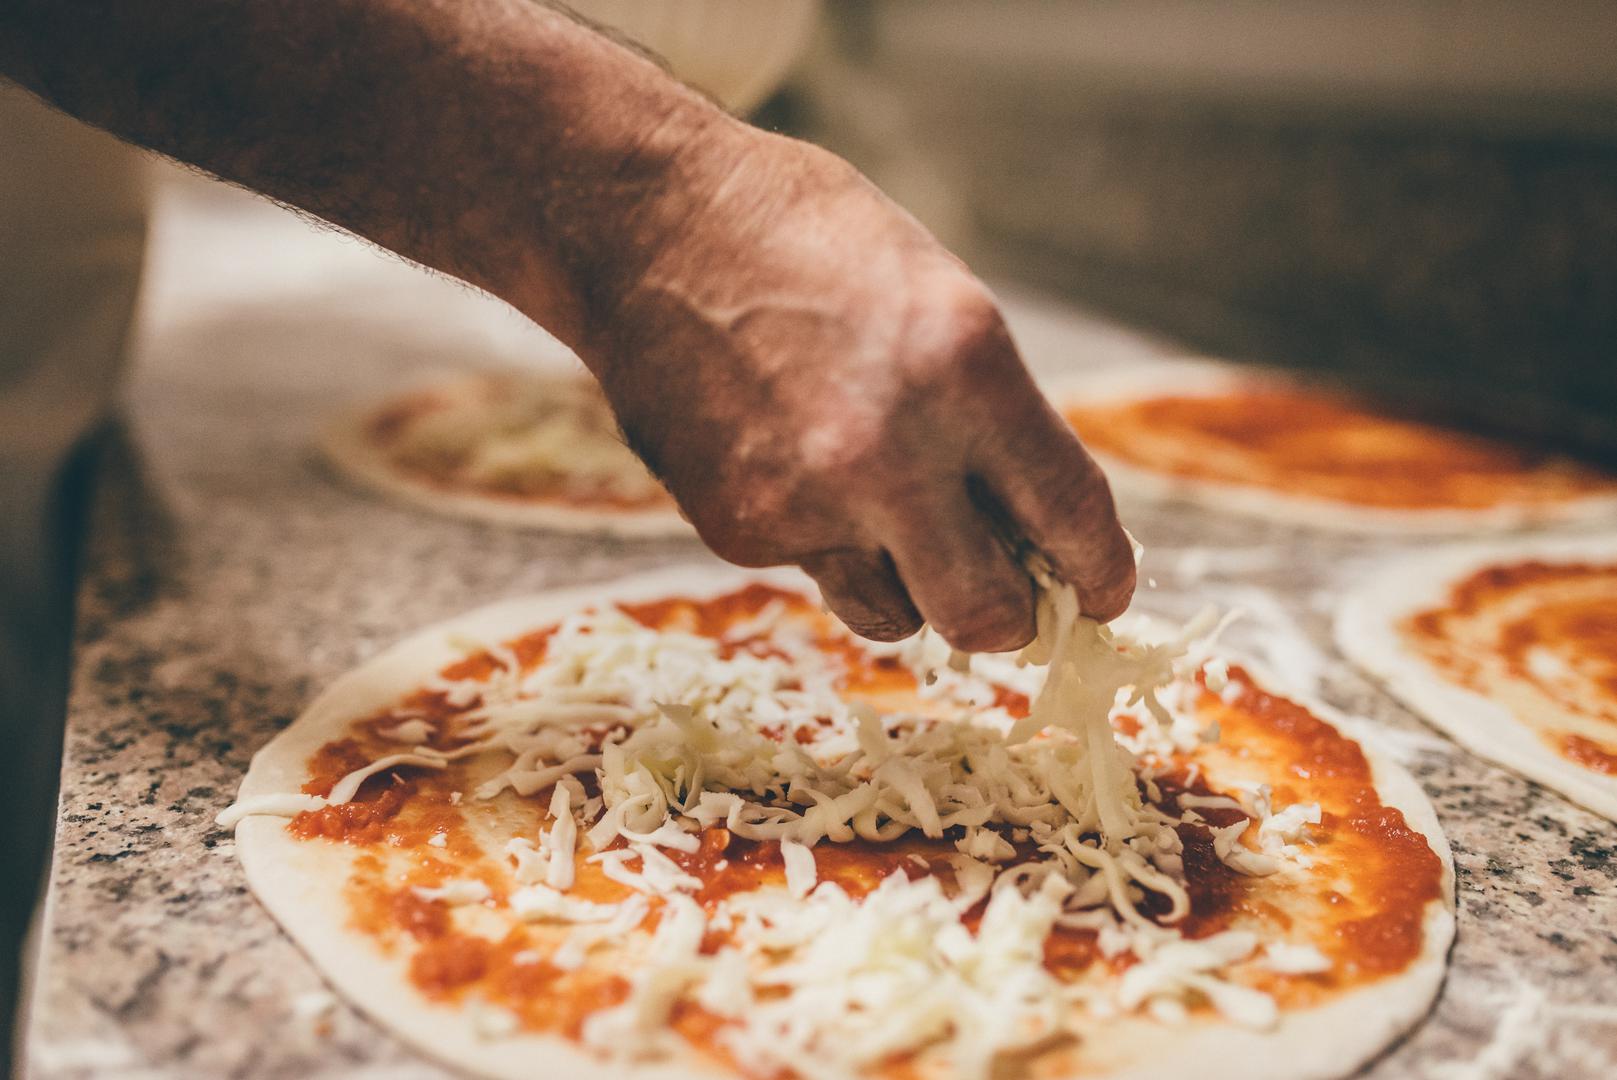 Stručnjaci tvrde kako je riječ o "termodinamici", odnosno, temperaturi pečenja. Pizze se u restoranima i pizzerijama peku u krušnim pećima na temperaturi od 329 stupnjeva i vrućina se raspoređuje ravnomjerno.